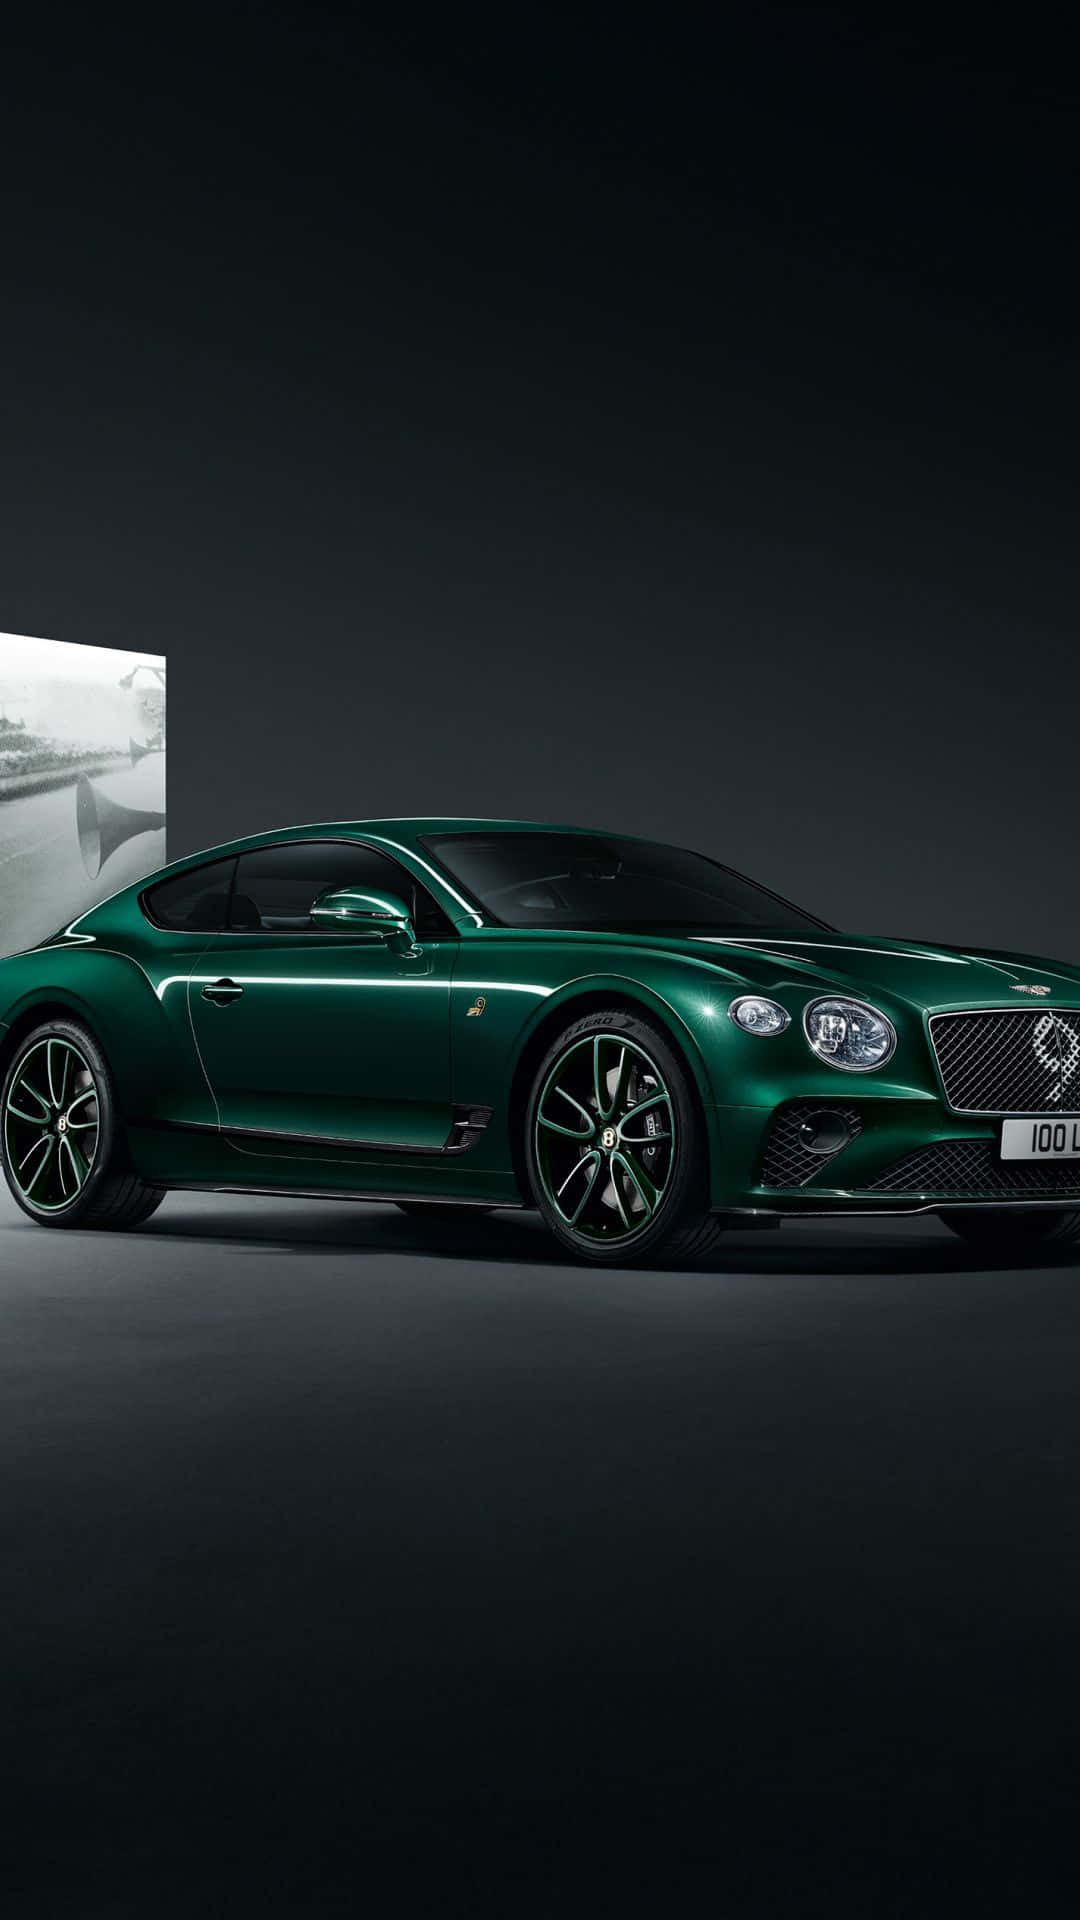 Cool Green Bentley iPhone Wallpaper